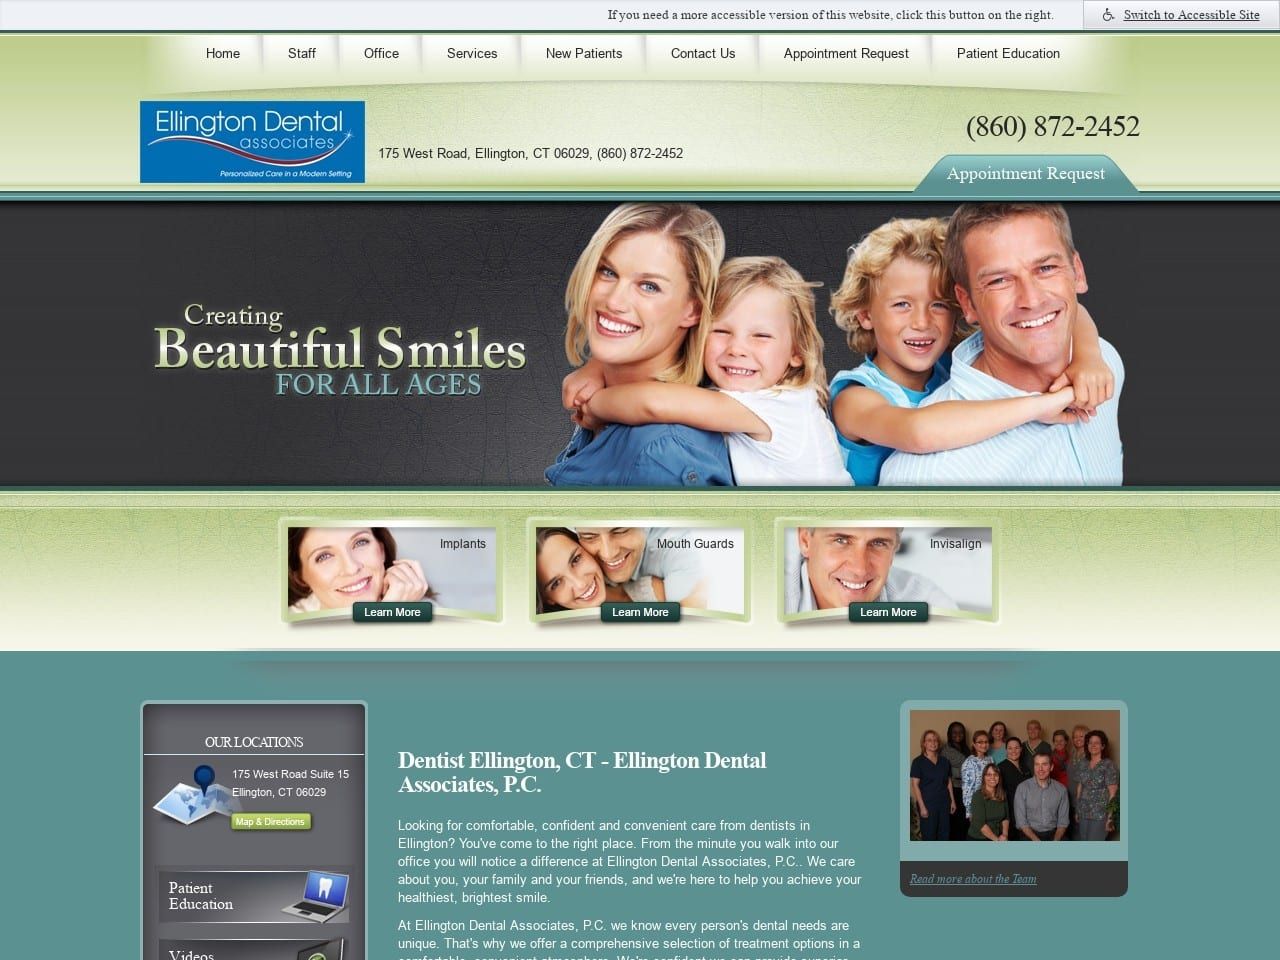 Ellington Dental Associates P.C. Website Screenshot from ellingtondental.com